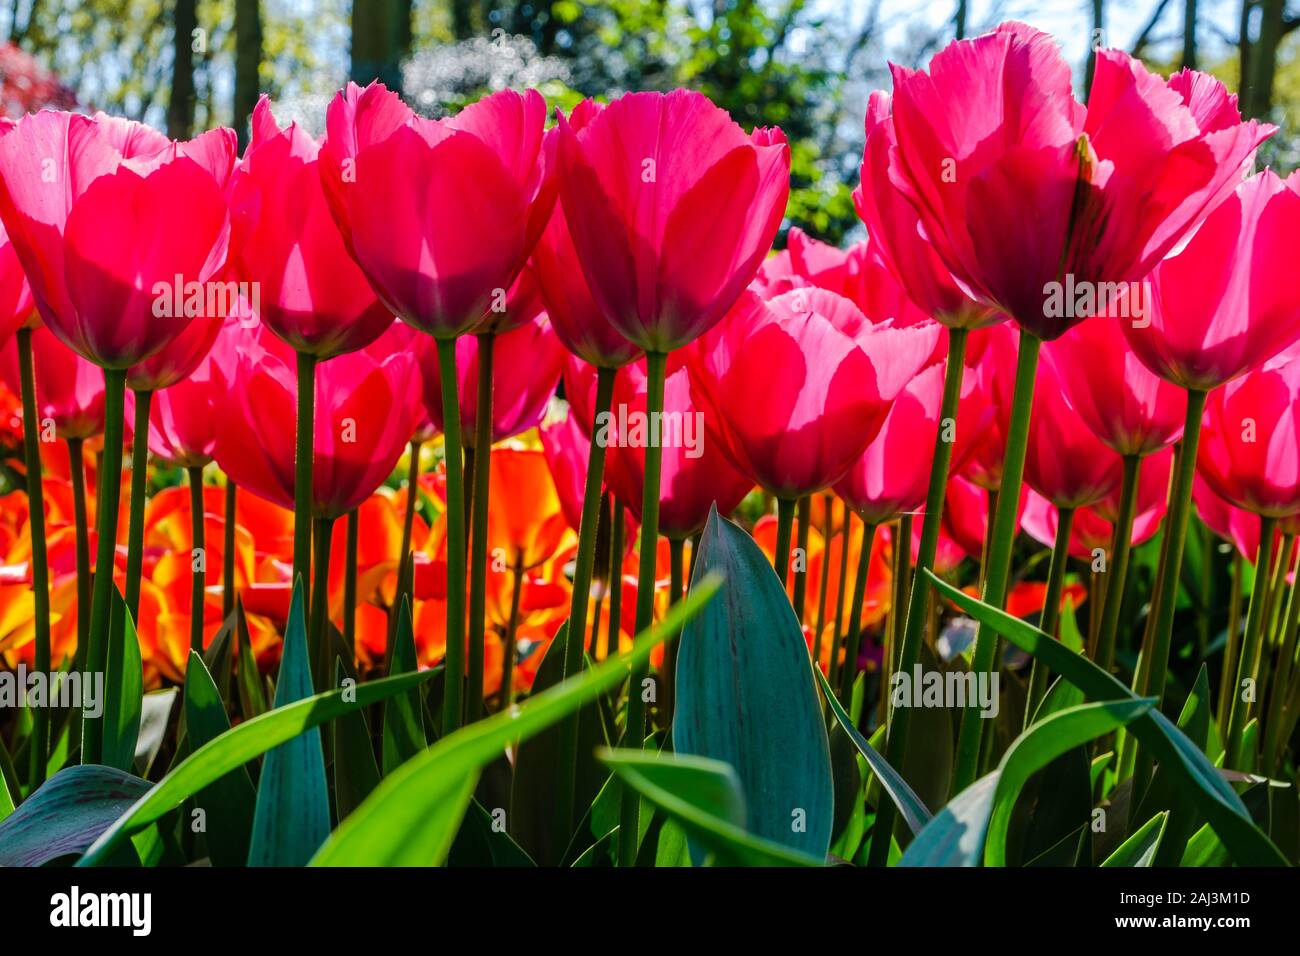 Seitenansicht des hellen rot-rosa Tulpen. Tulpe Blume Bett im Niederländischen keukenhof tulip Garten mit verschiedenen Arten von Tulpen. Schöne Blumen close-up mit s Stockfoto